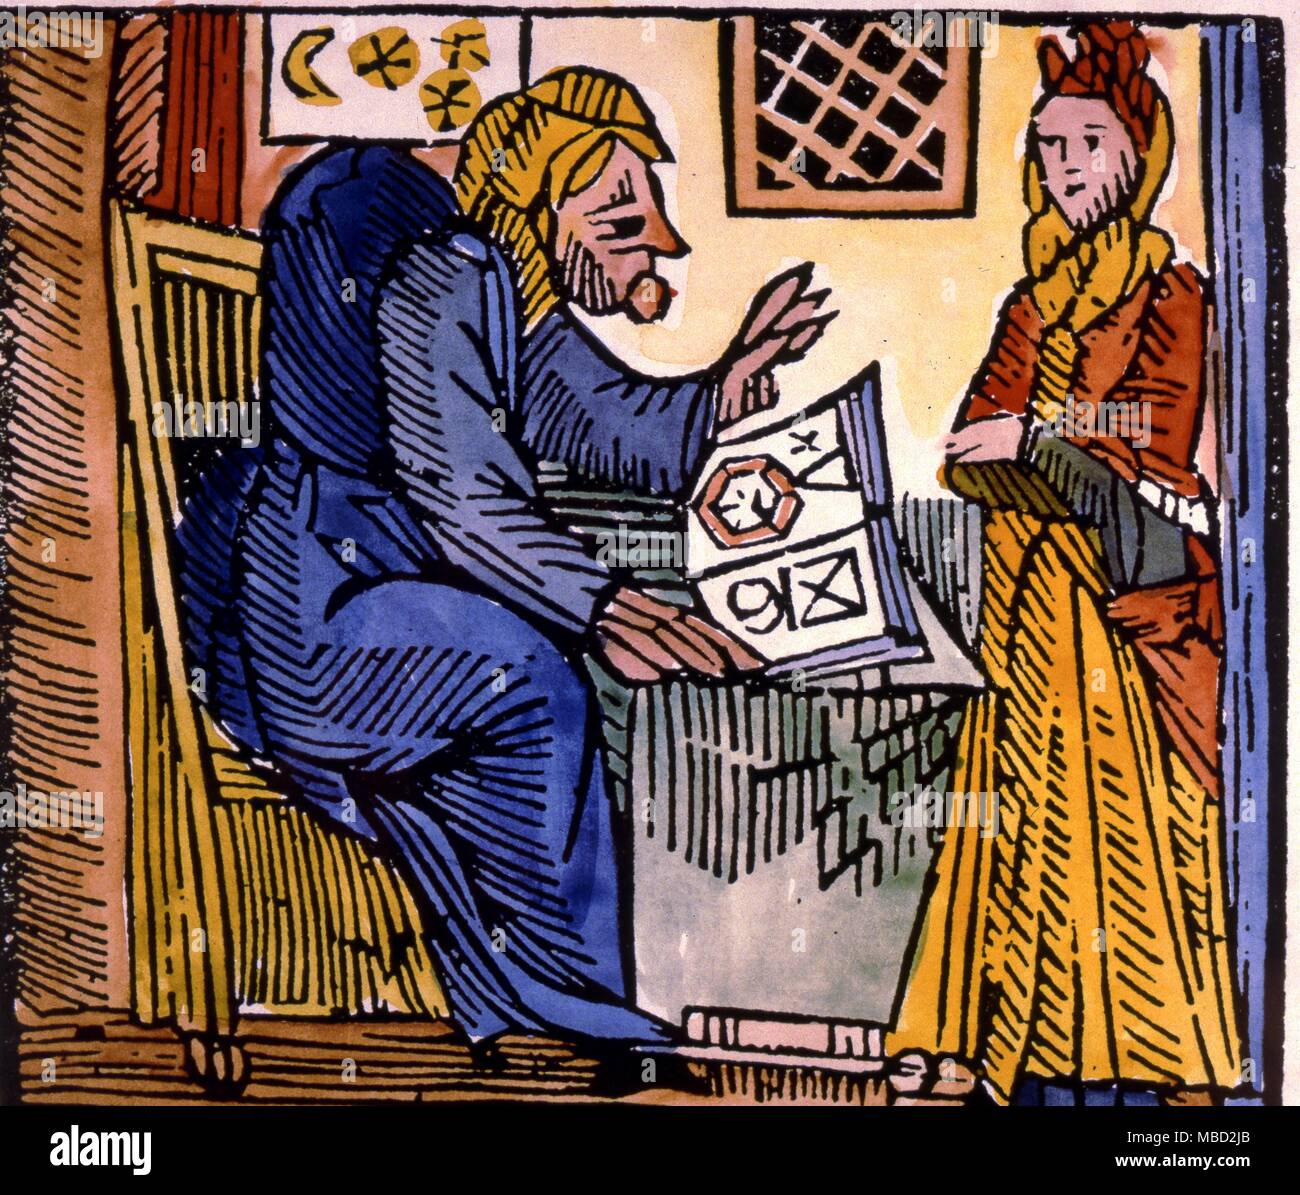 La sorcière, la mère Shipton, jetant un horoscope. À partir d'une brochure de la fin du xvie siècle. Banque D'Images